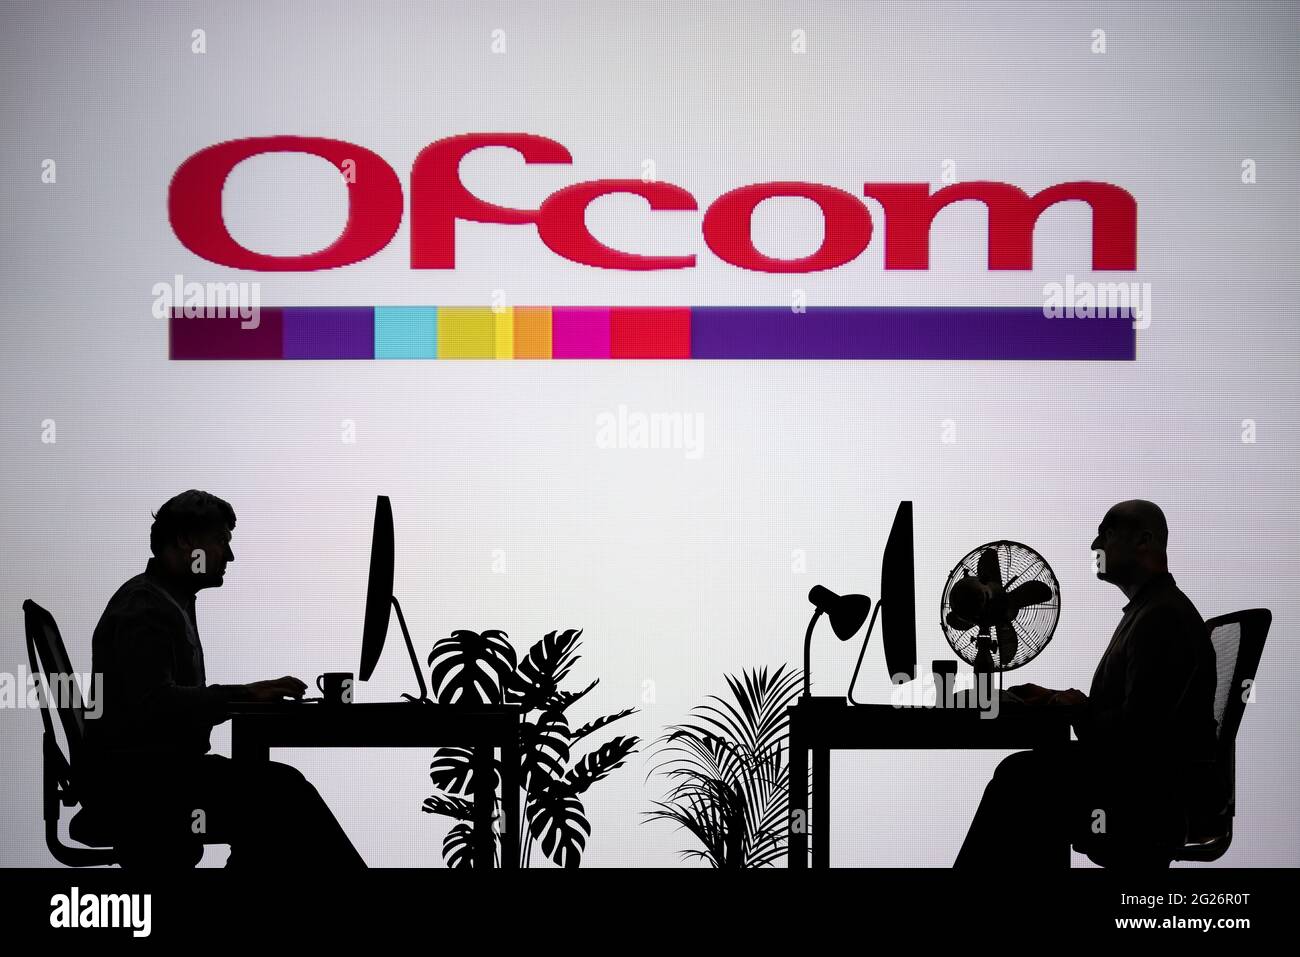 Le logo Ofcom est visible sur un écran LED en arrière-plan tandis que deux personnes silhoueteuses travaillent dans un environnement de bureau (usage éditorial uniquement) Banque D'Images